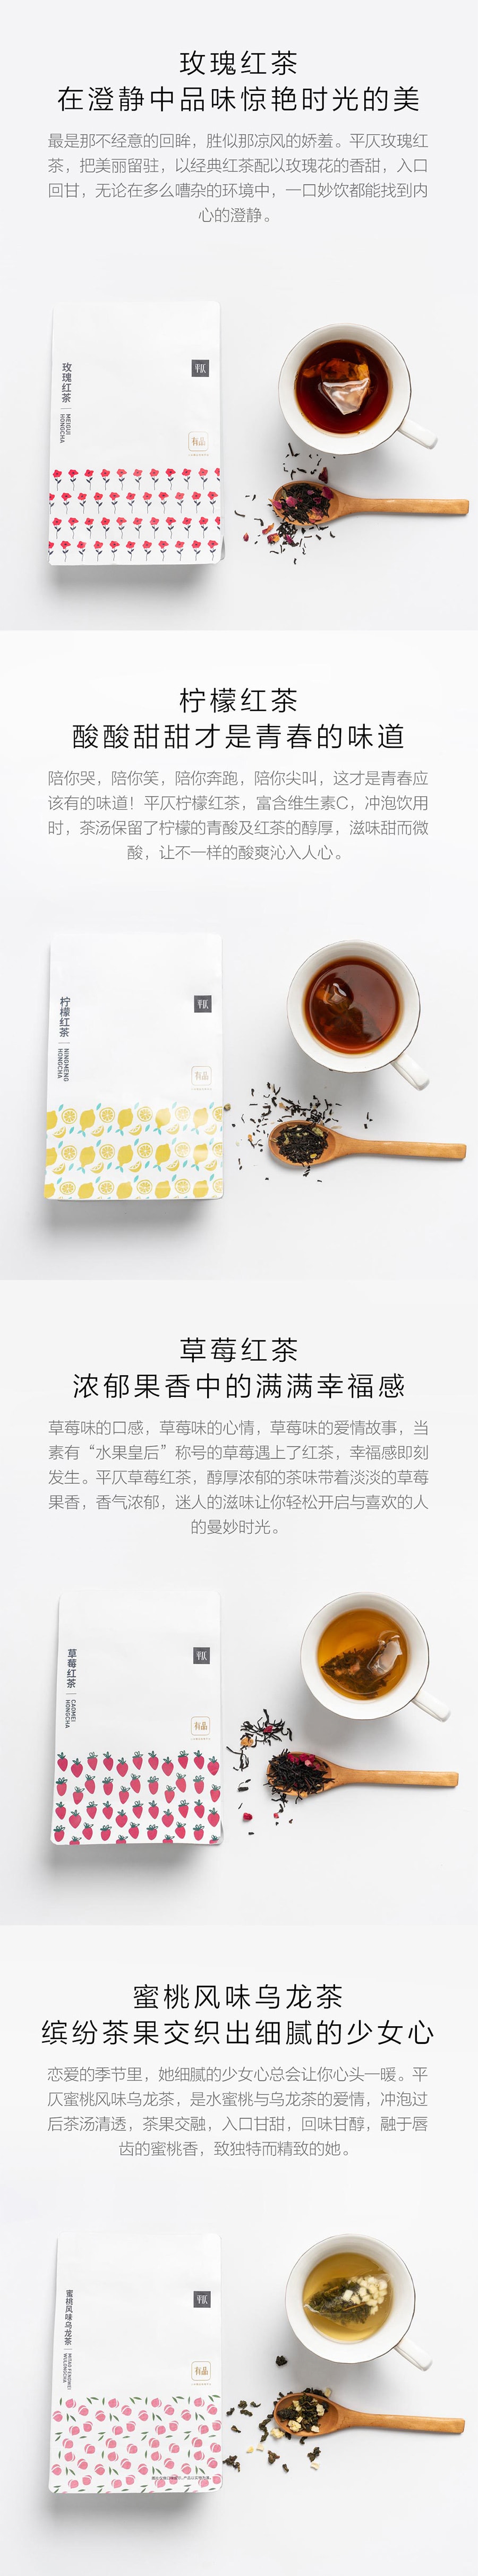 【中国直邮】小米有品蜜桃风味乌龙茶(调味茶)3g*20